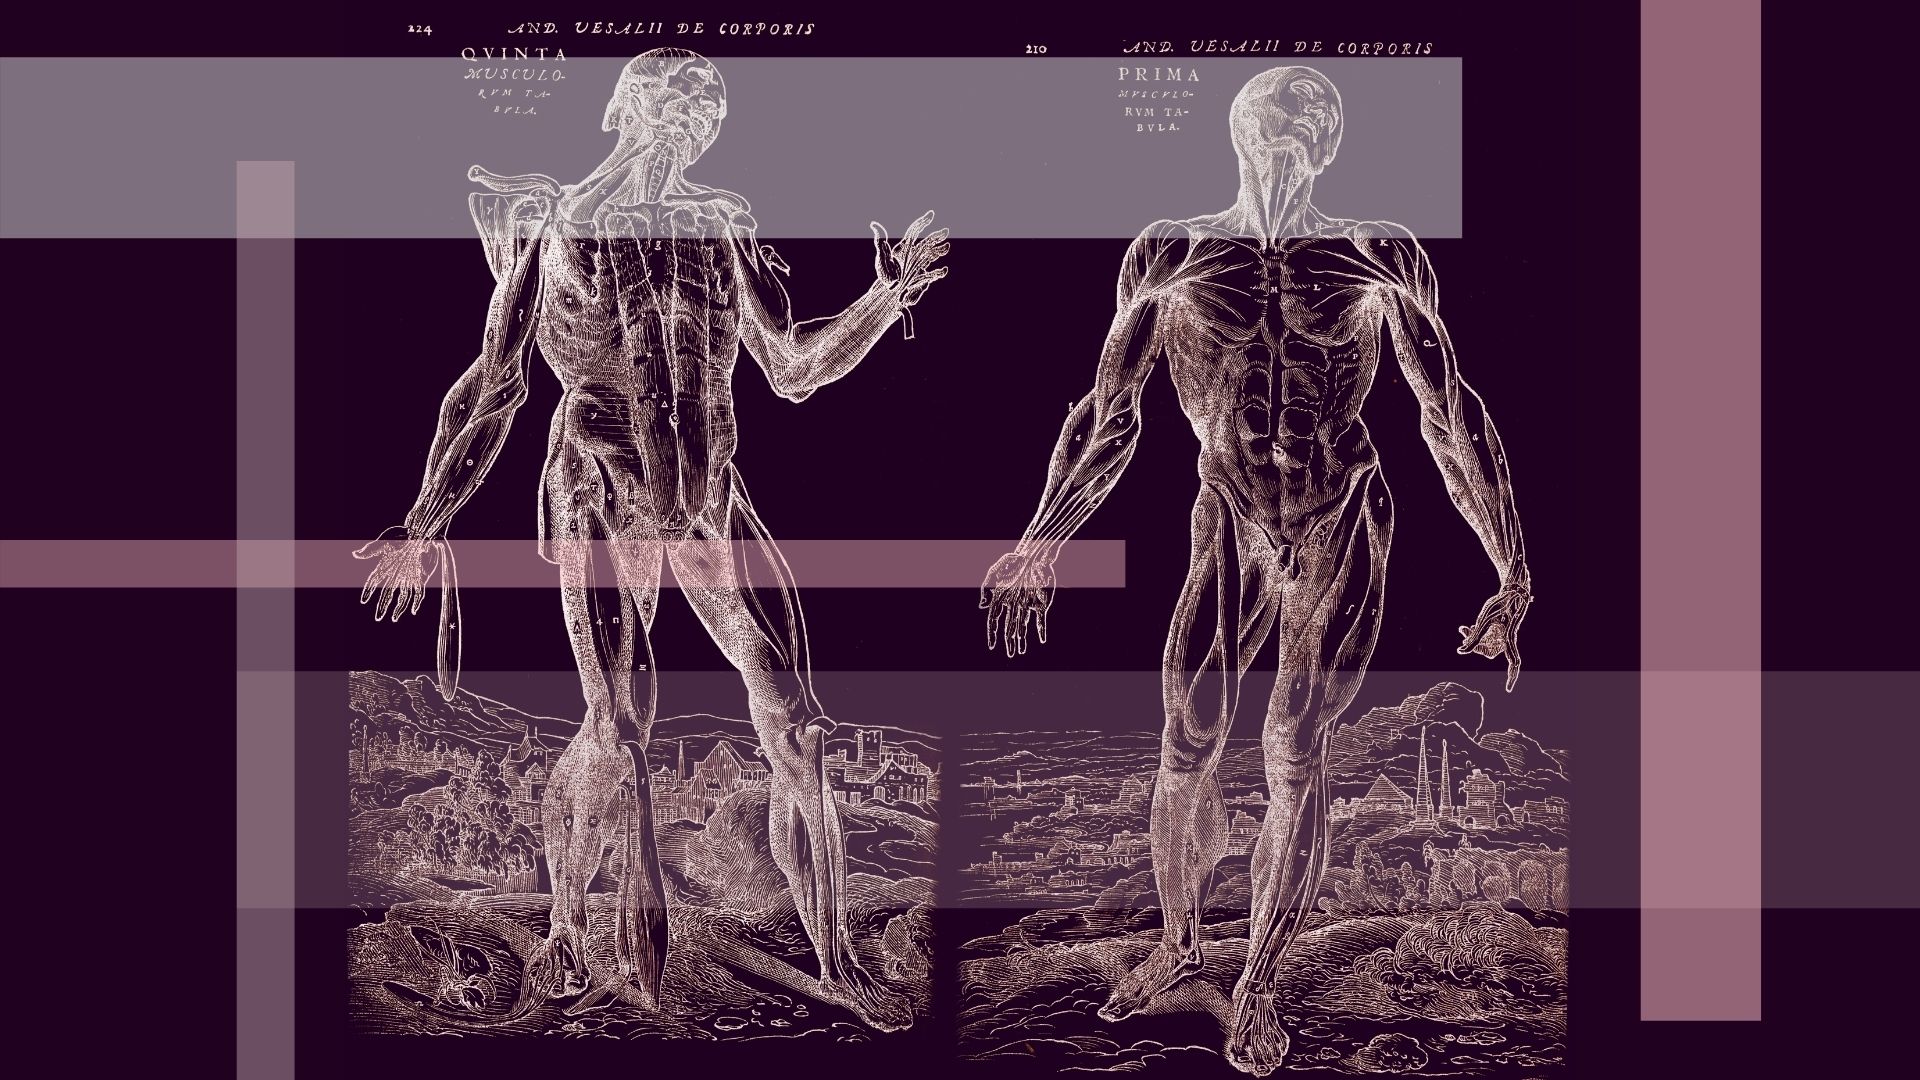 Grafika przedstawiająca dwa szkielety ludzkie. Grafiki pochodzą ze zbiorów zabytkowych